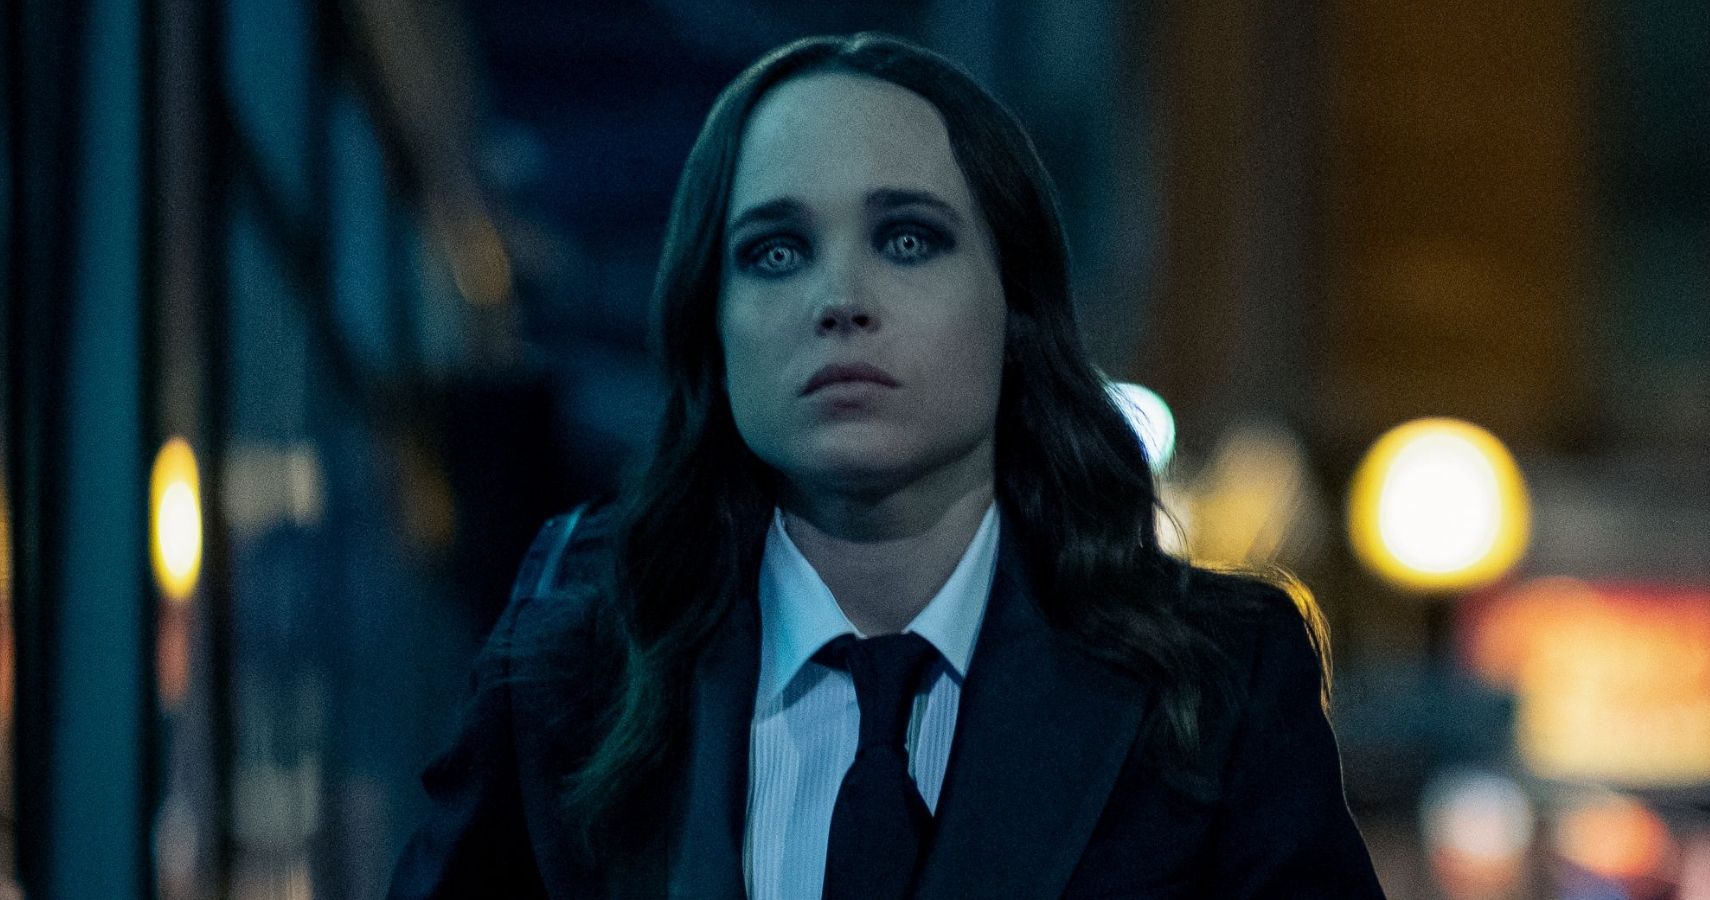 The Umbrella Academy: Ellen Page as Vanya